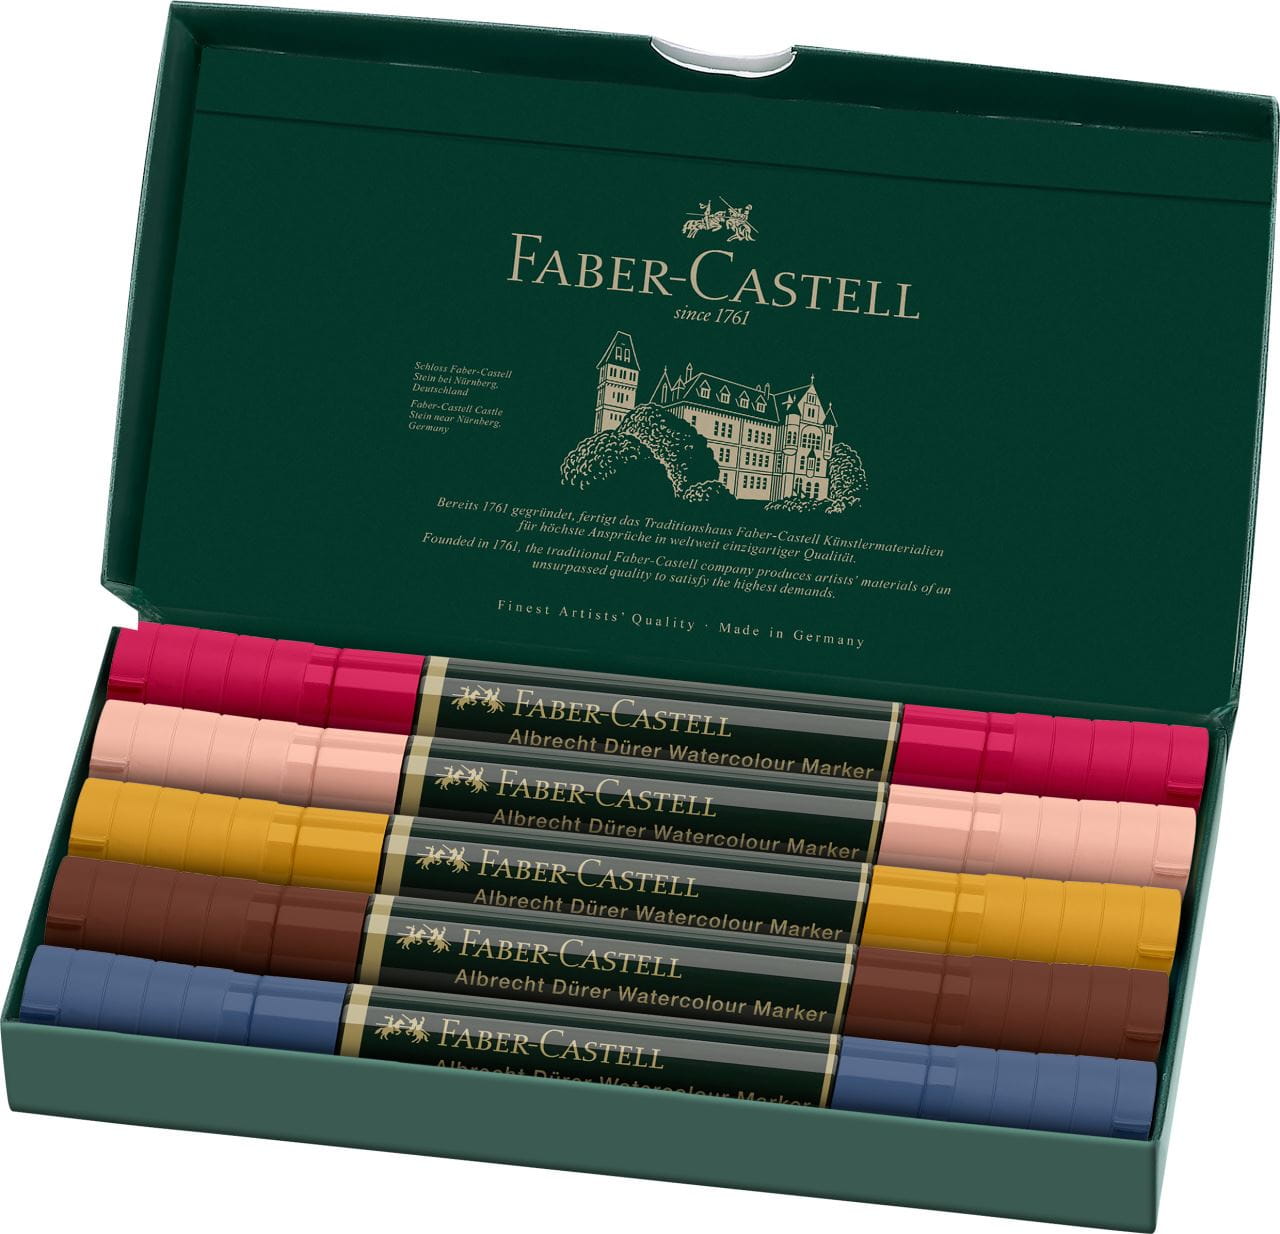 Faber-Castell - Estuche con 5 marcadores acuarelables A.Dürer, retratos